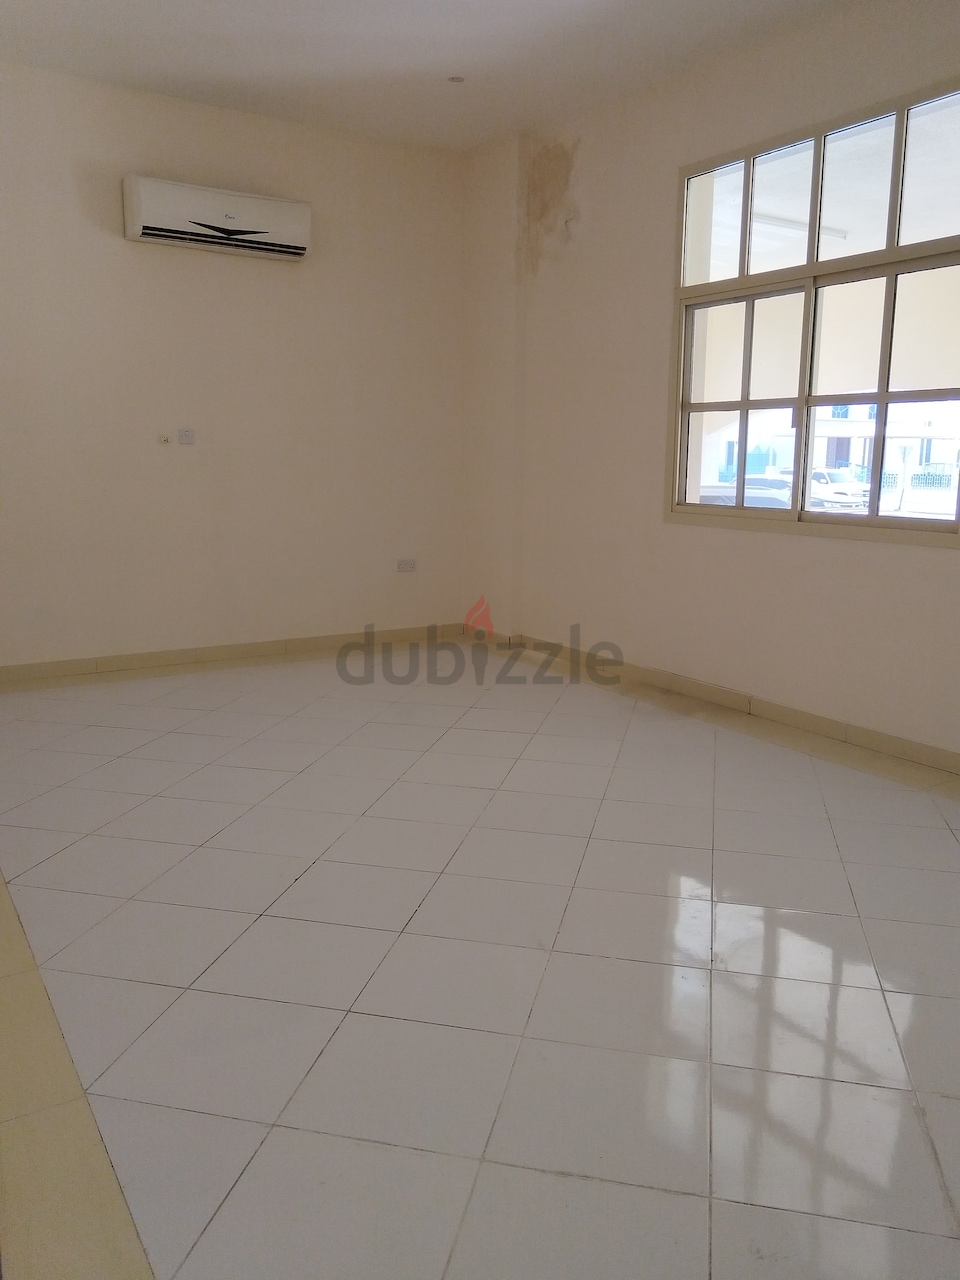 Spacious 1 Bhk Apartment For Rent In Al Khabisi